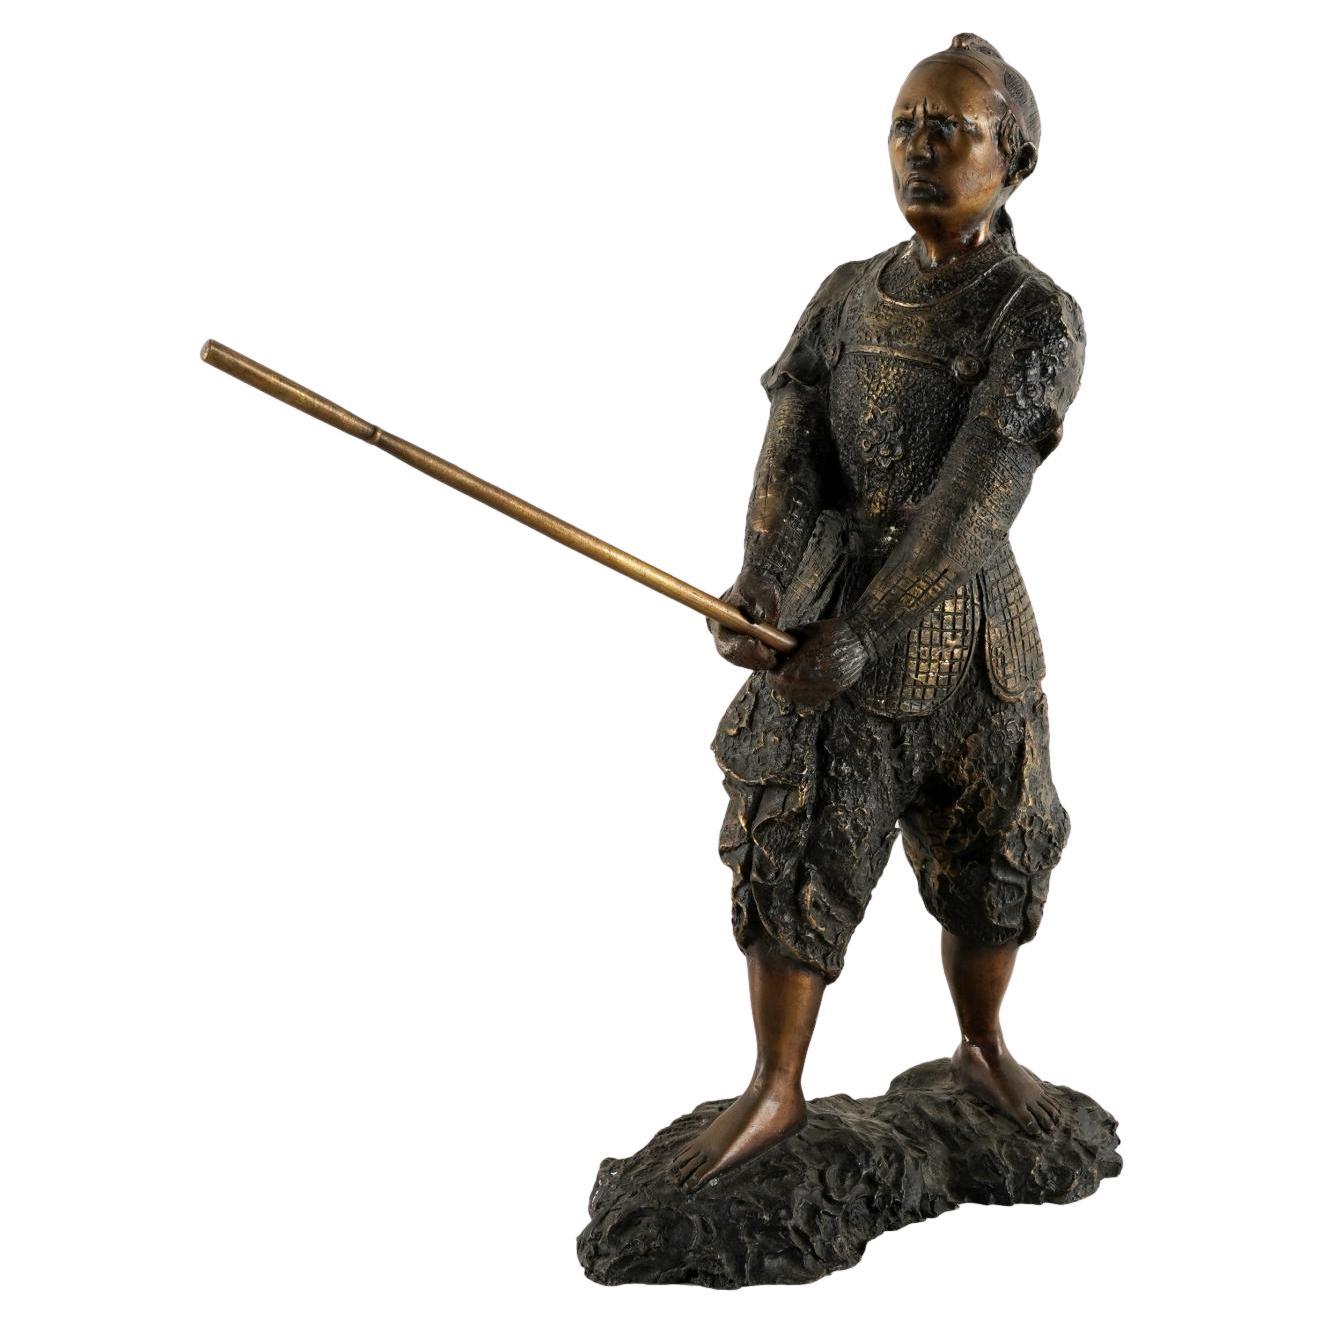 Bronzeskulptur eines japanischen Samurai-Kriegers aus dem Samurai-Stil aus dem späten 20. Jahrhundert